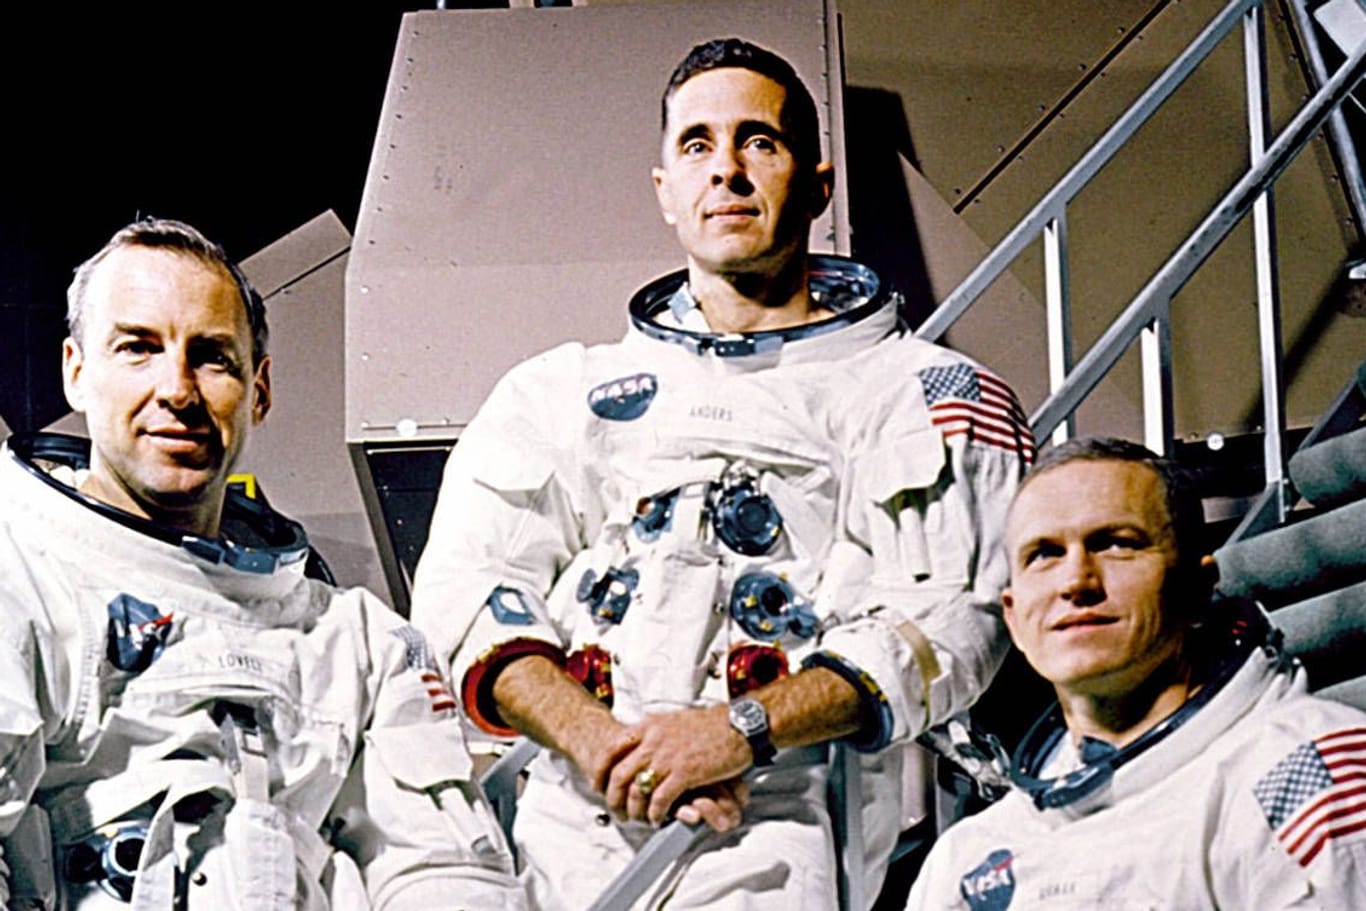 William Anders (Mitte) mit seinen Apollo-Kollegen James Lovell (l.) und Frank Borman.